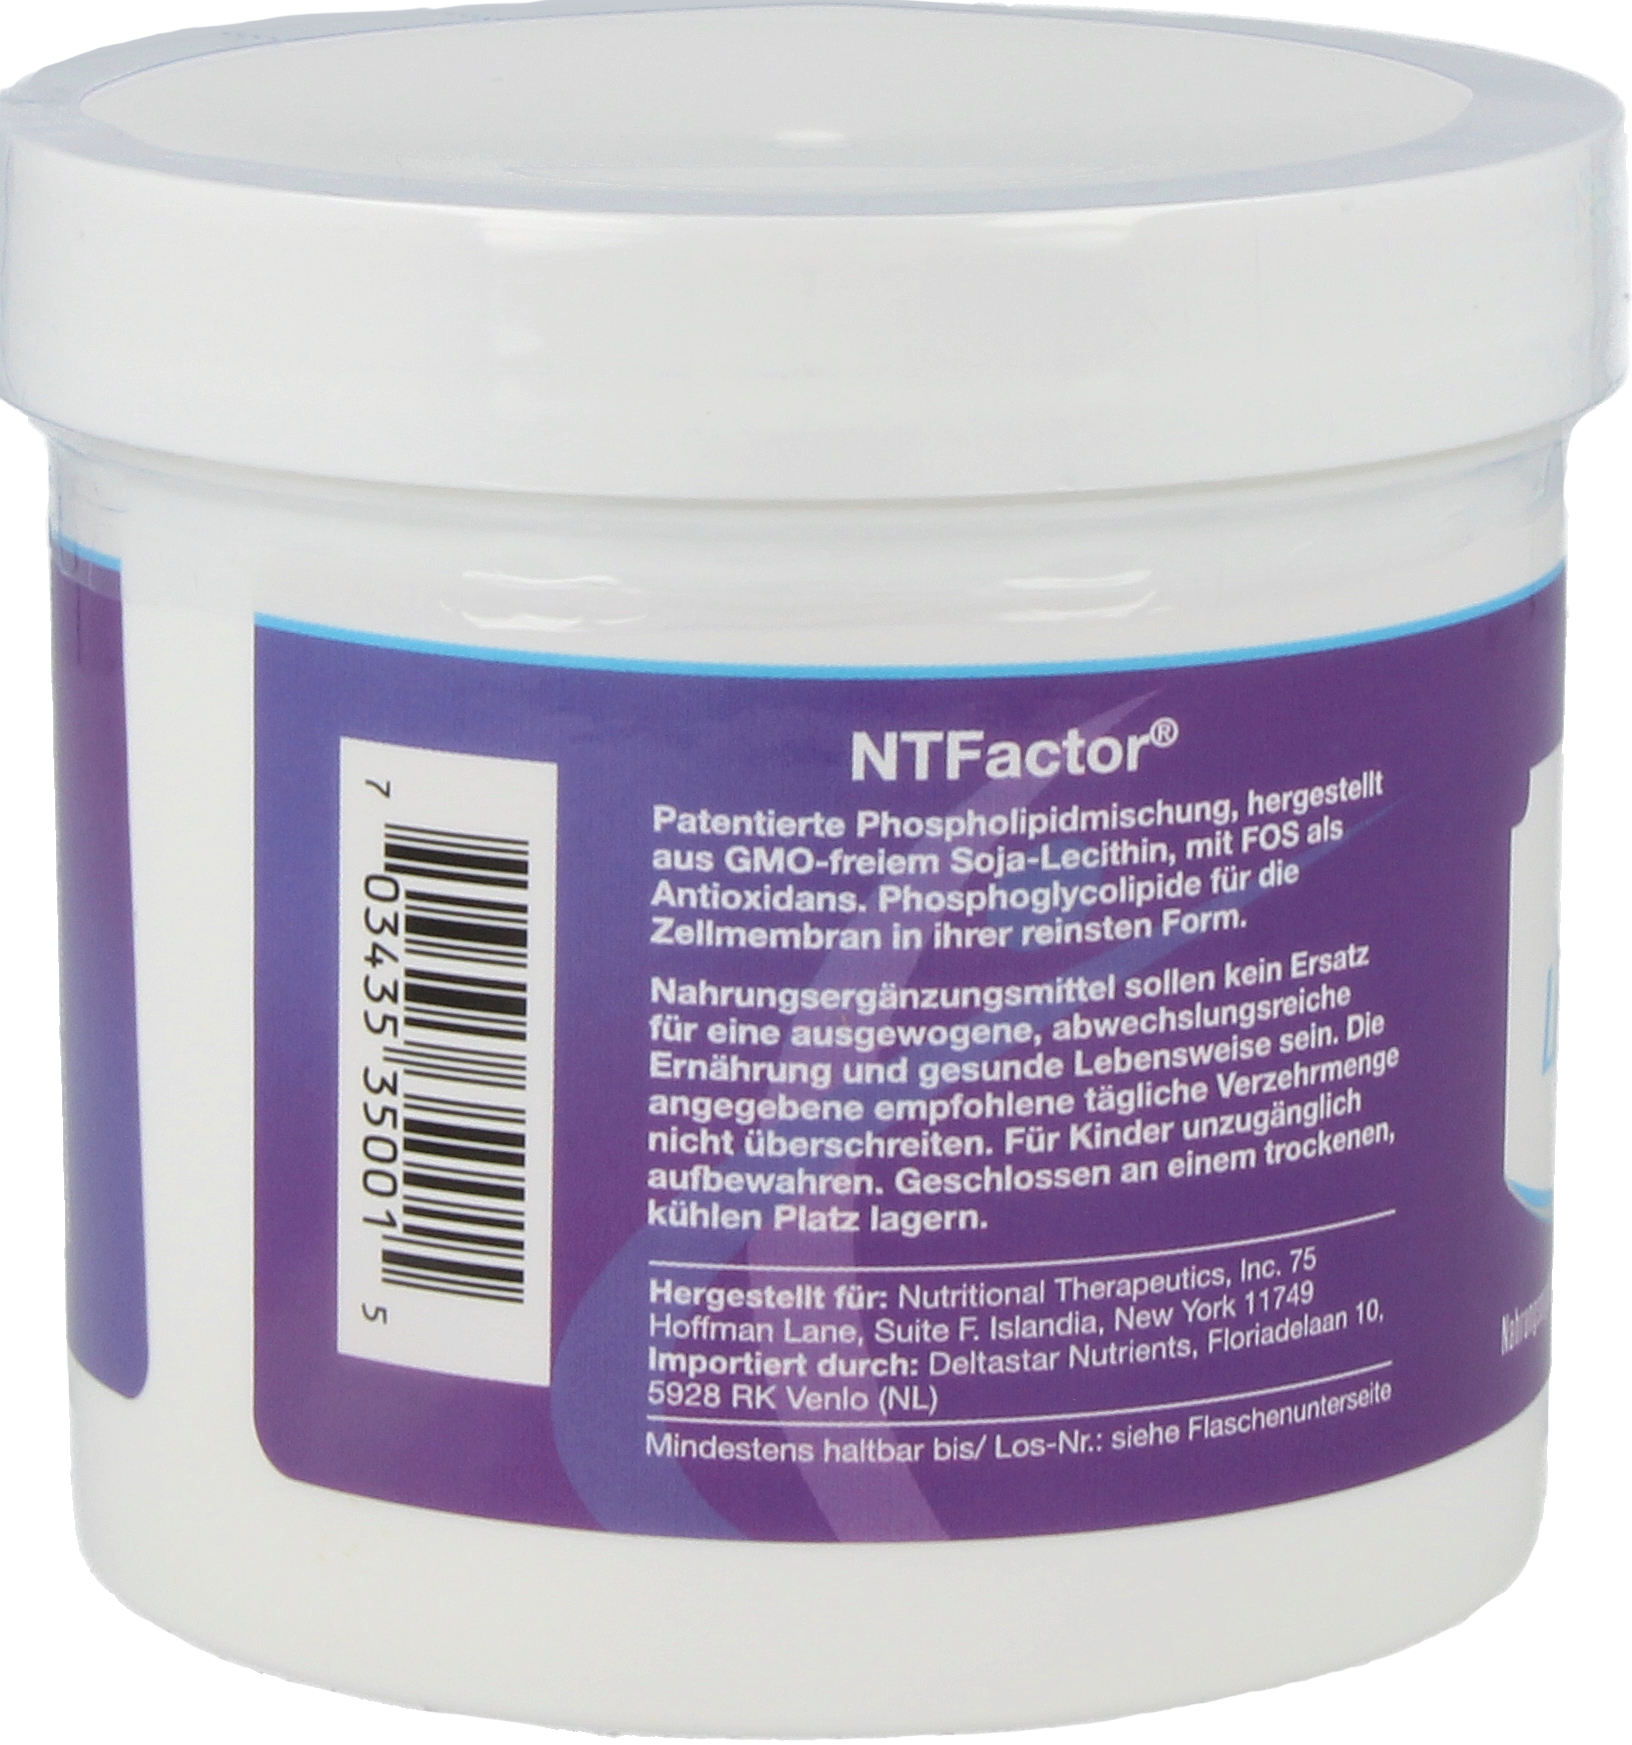 NT Factor® EnergyLipids Powder 